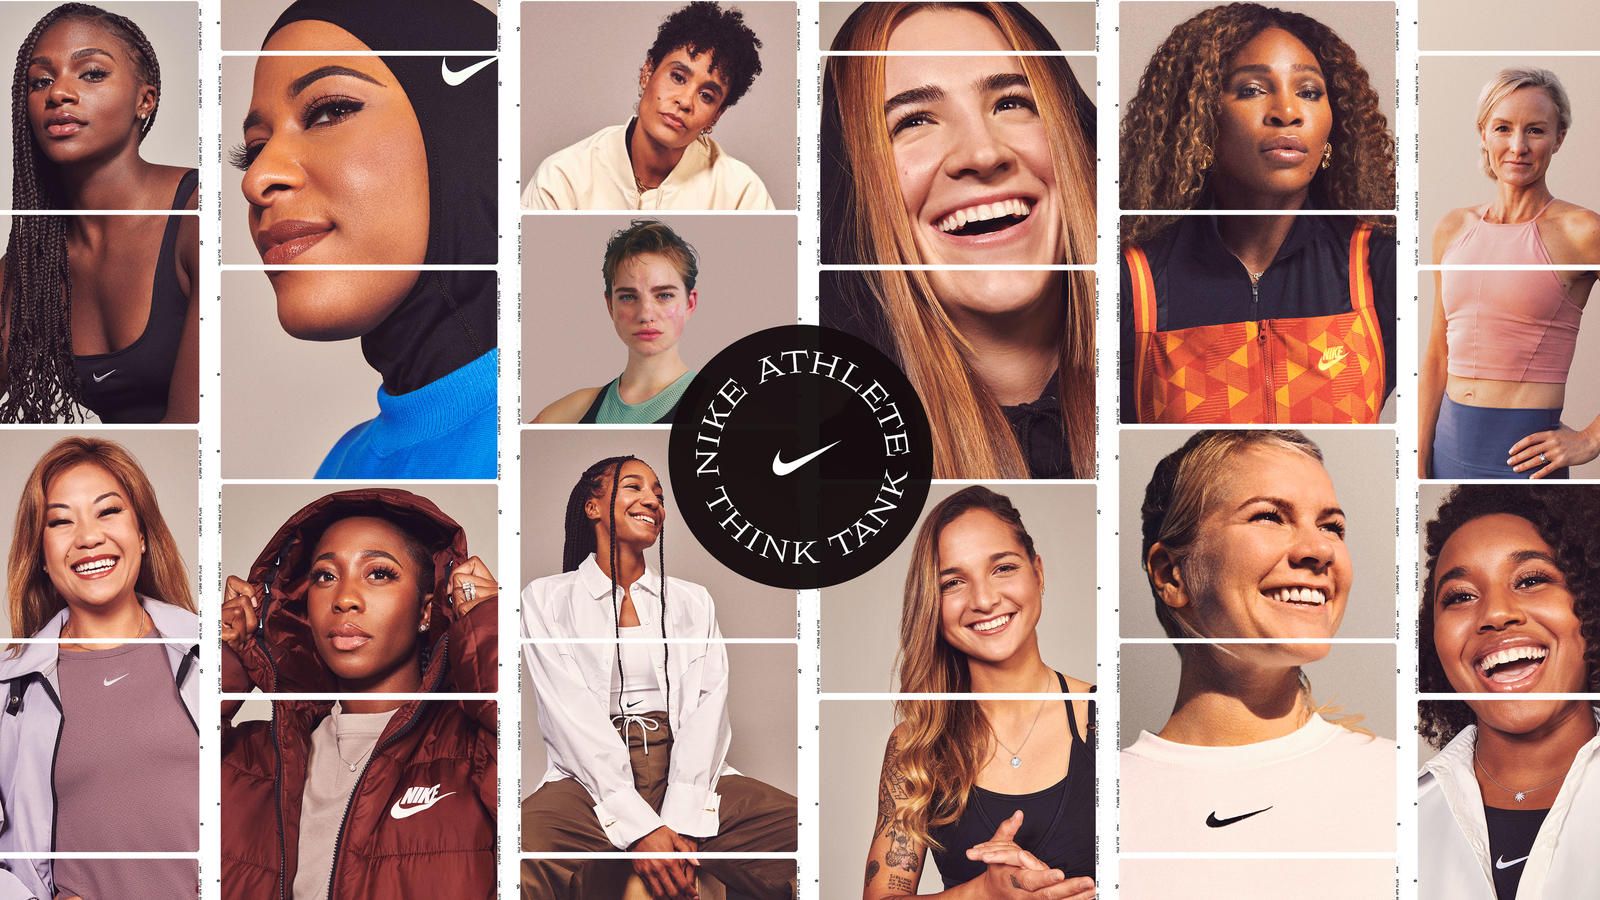 Amperio Verdulero Sospechar Nike lanza un 'think tank' centrado en mujeres atletas qu...